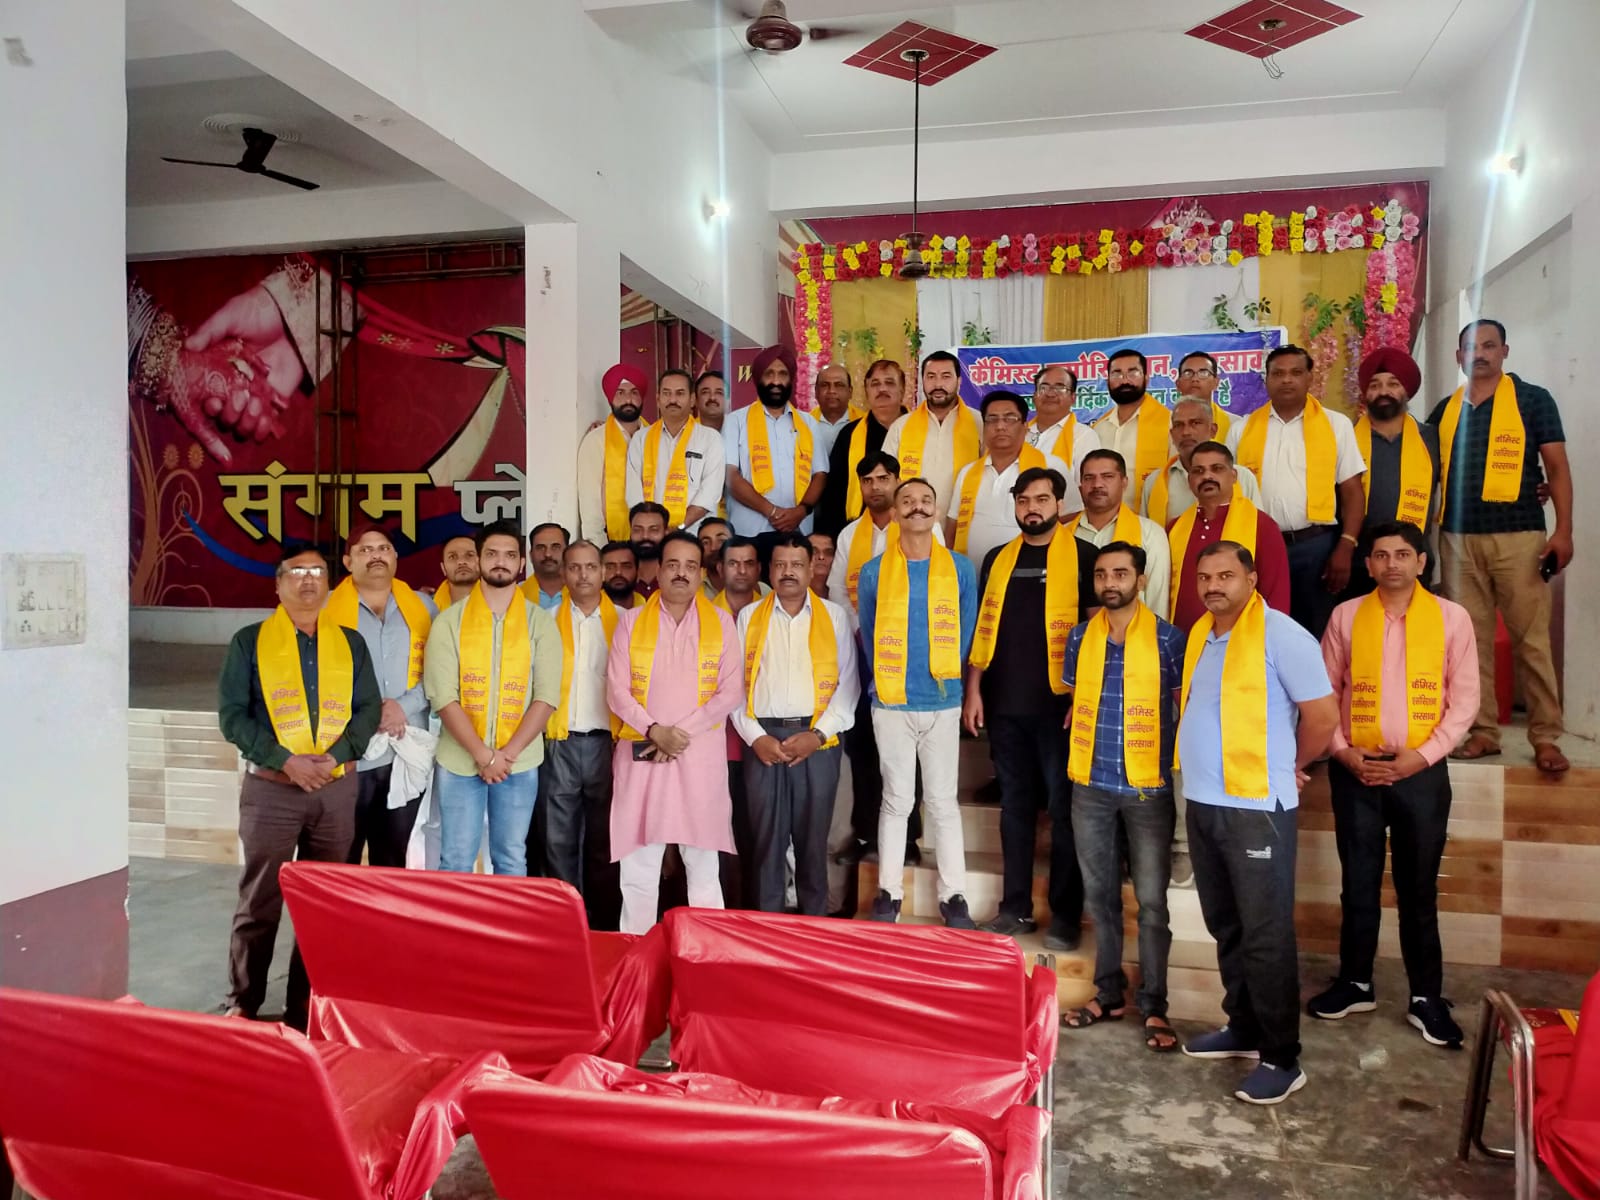 सहारनपुर के छेत्रिय इकाई सरसावां दवा व्यापारी संगठन की कार्य करणी का हुआ गठन